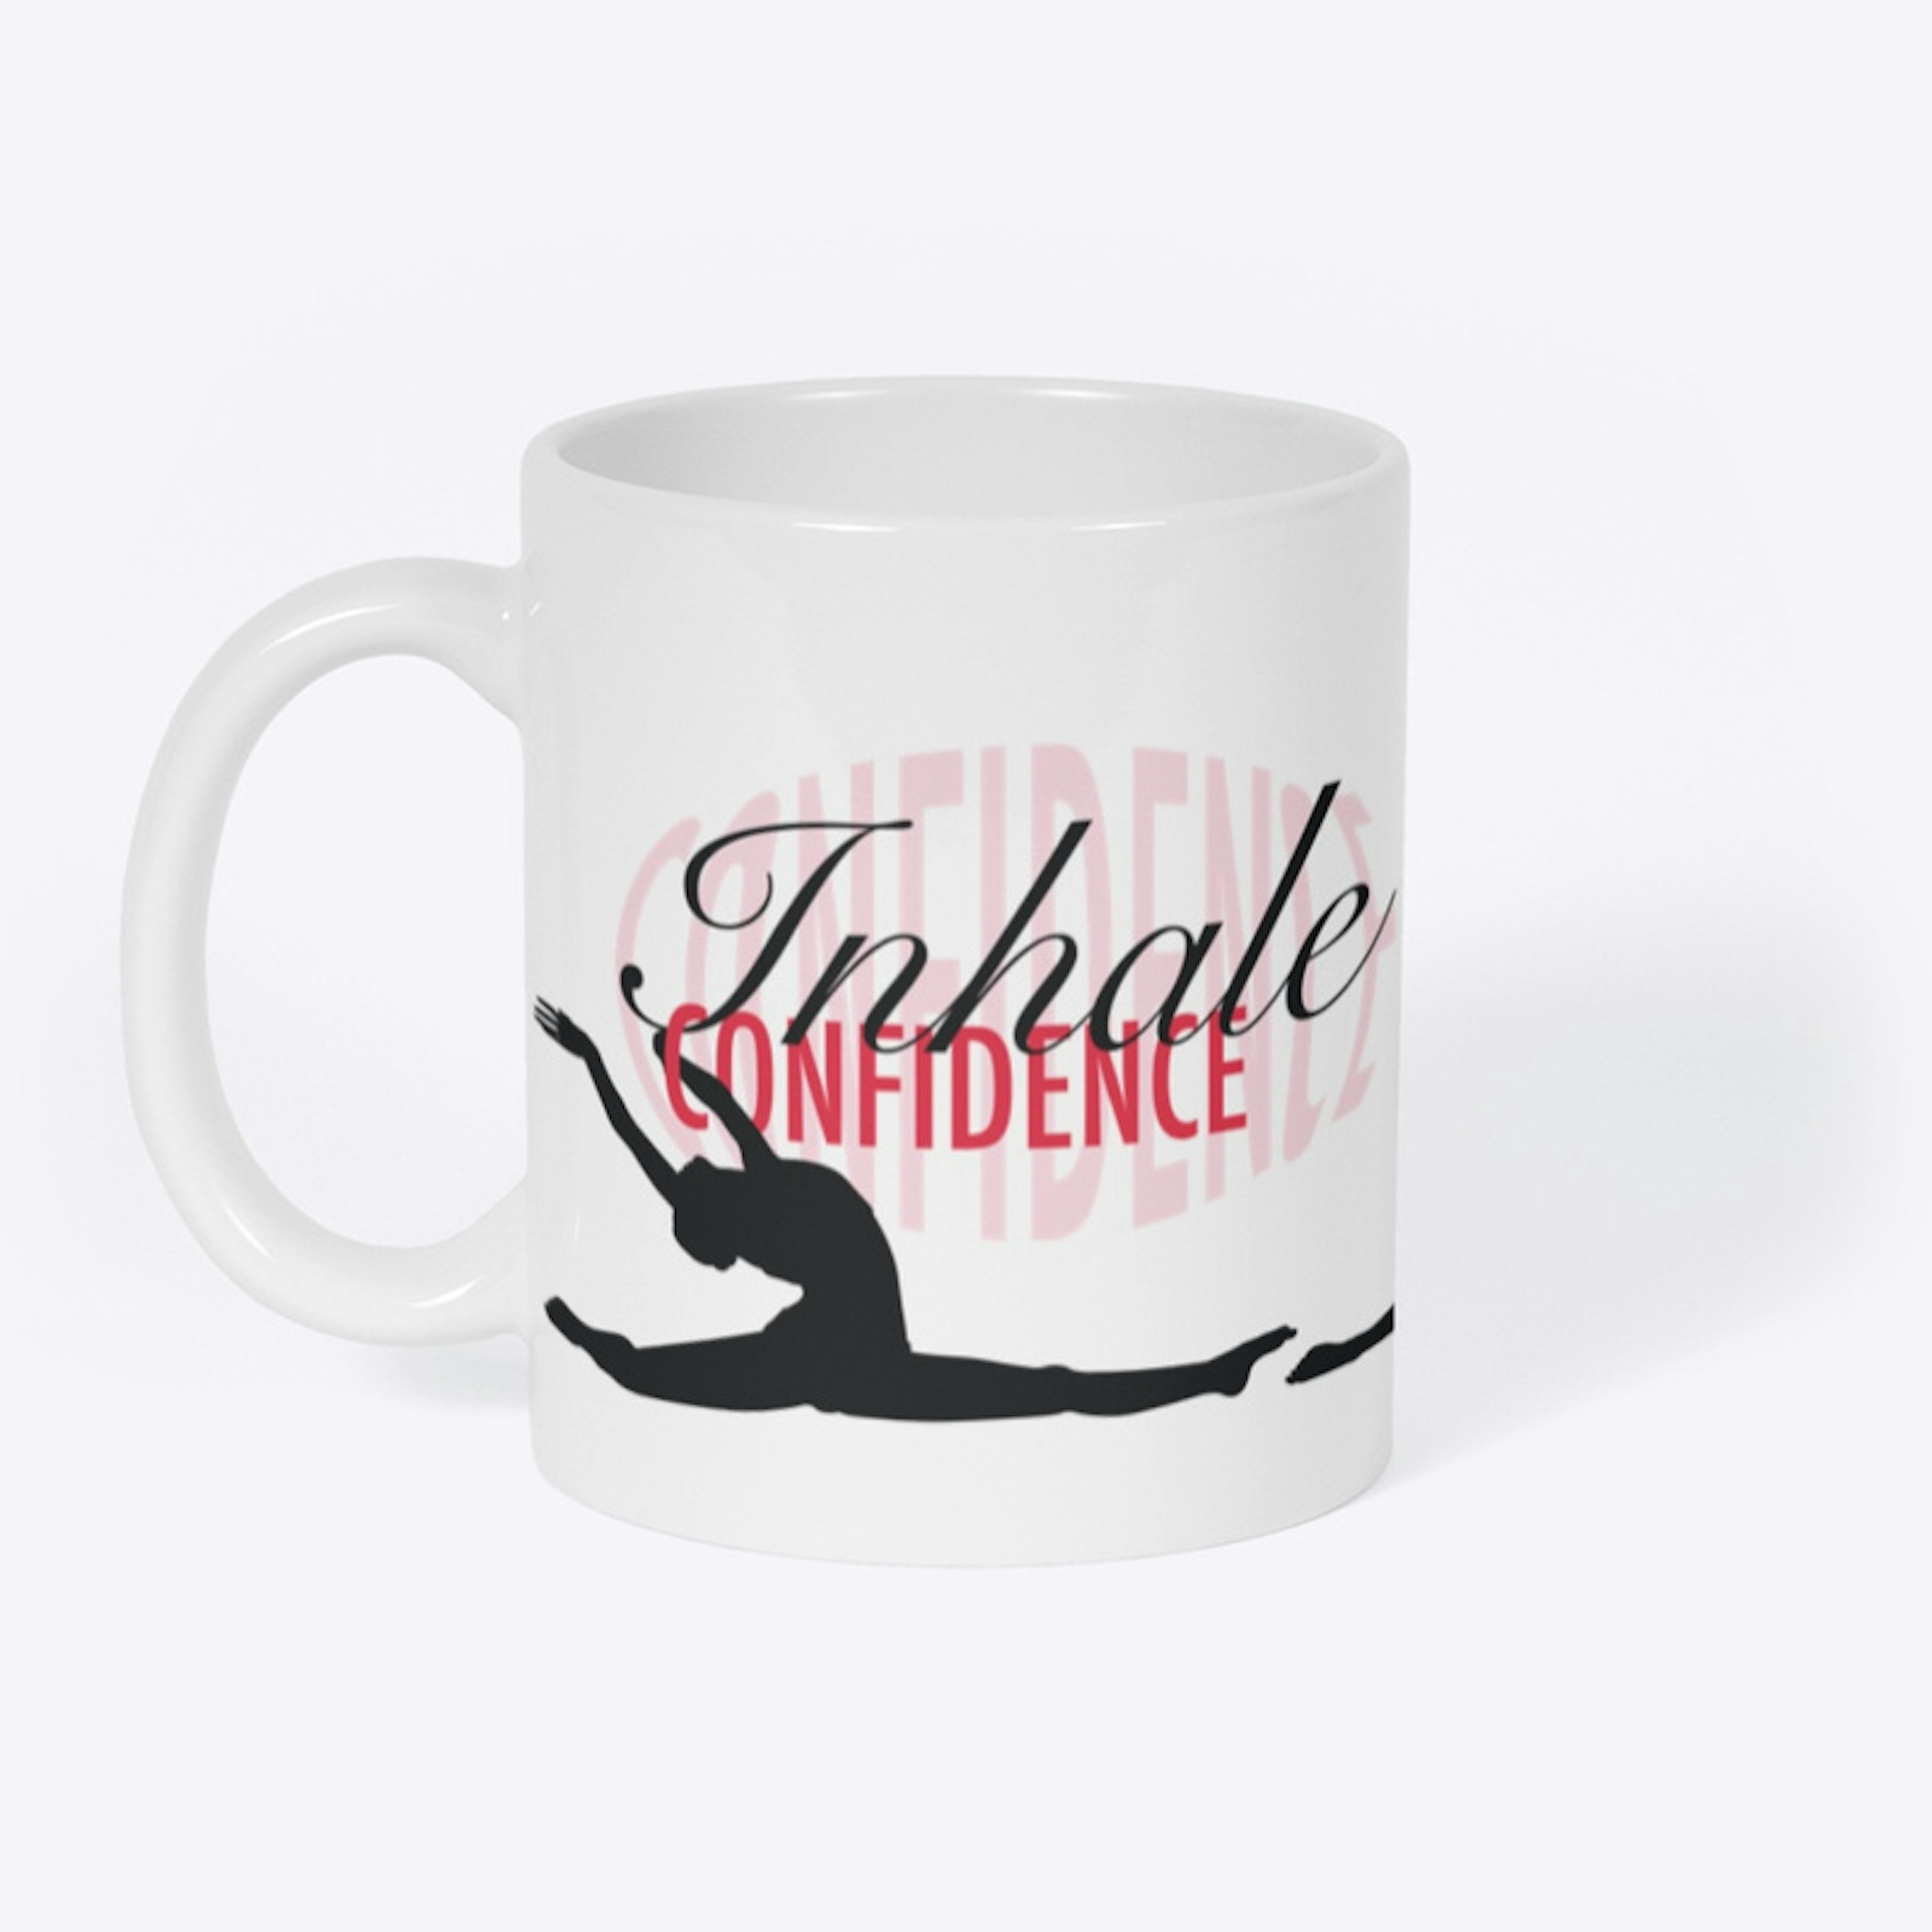 StepFlix breathing silhouettes mug